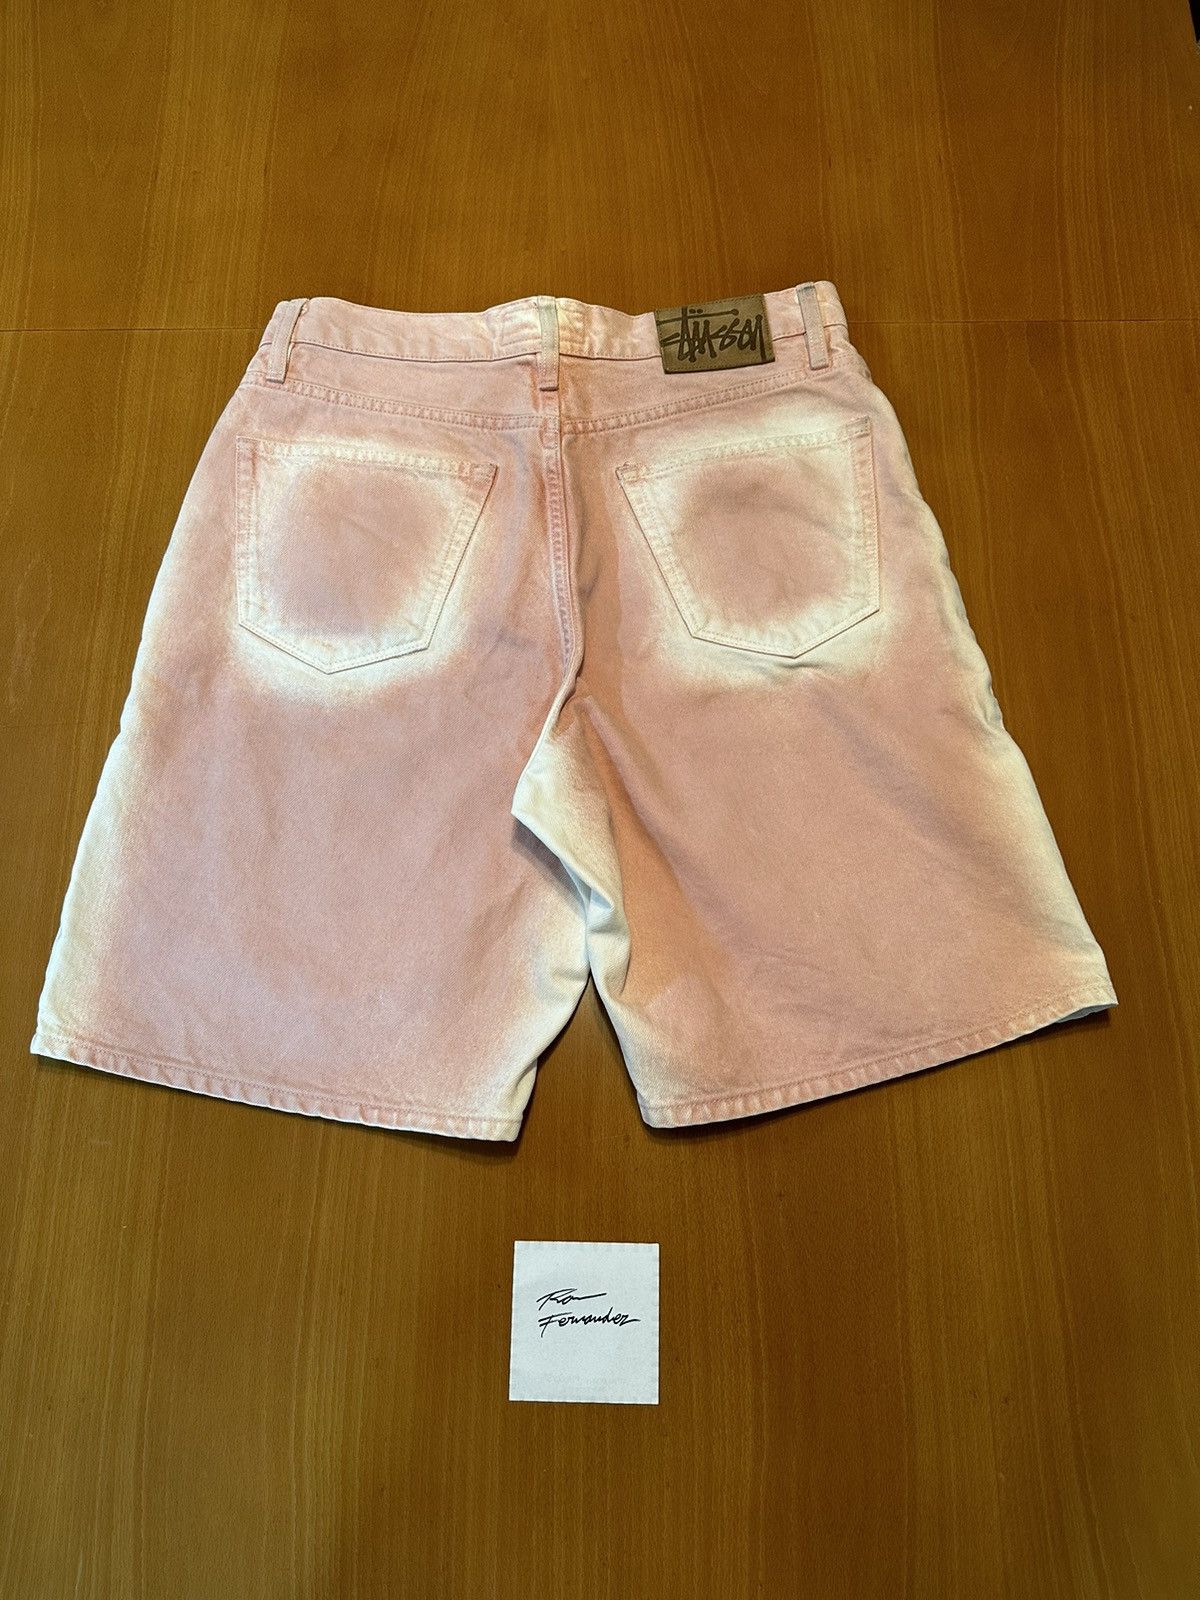 Stussy Stussy Spray dye Big Ol shorts pink | Grailed